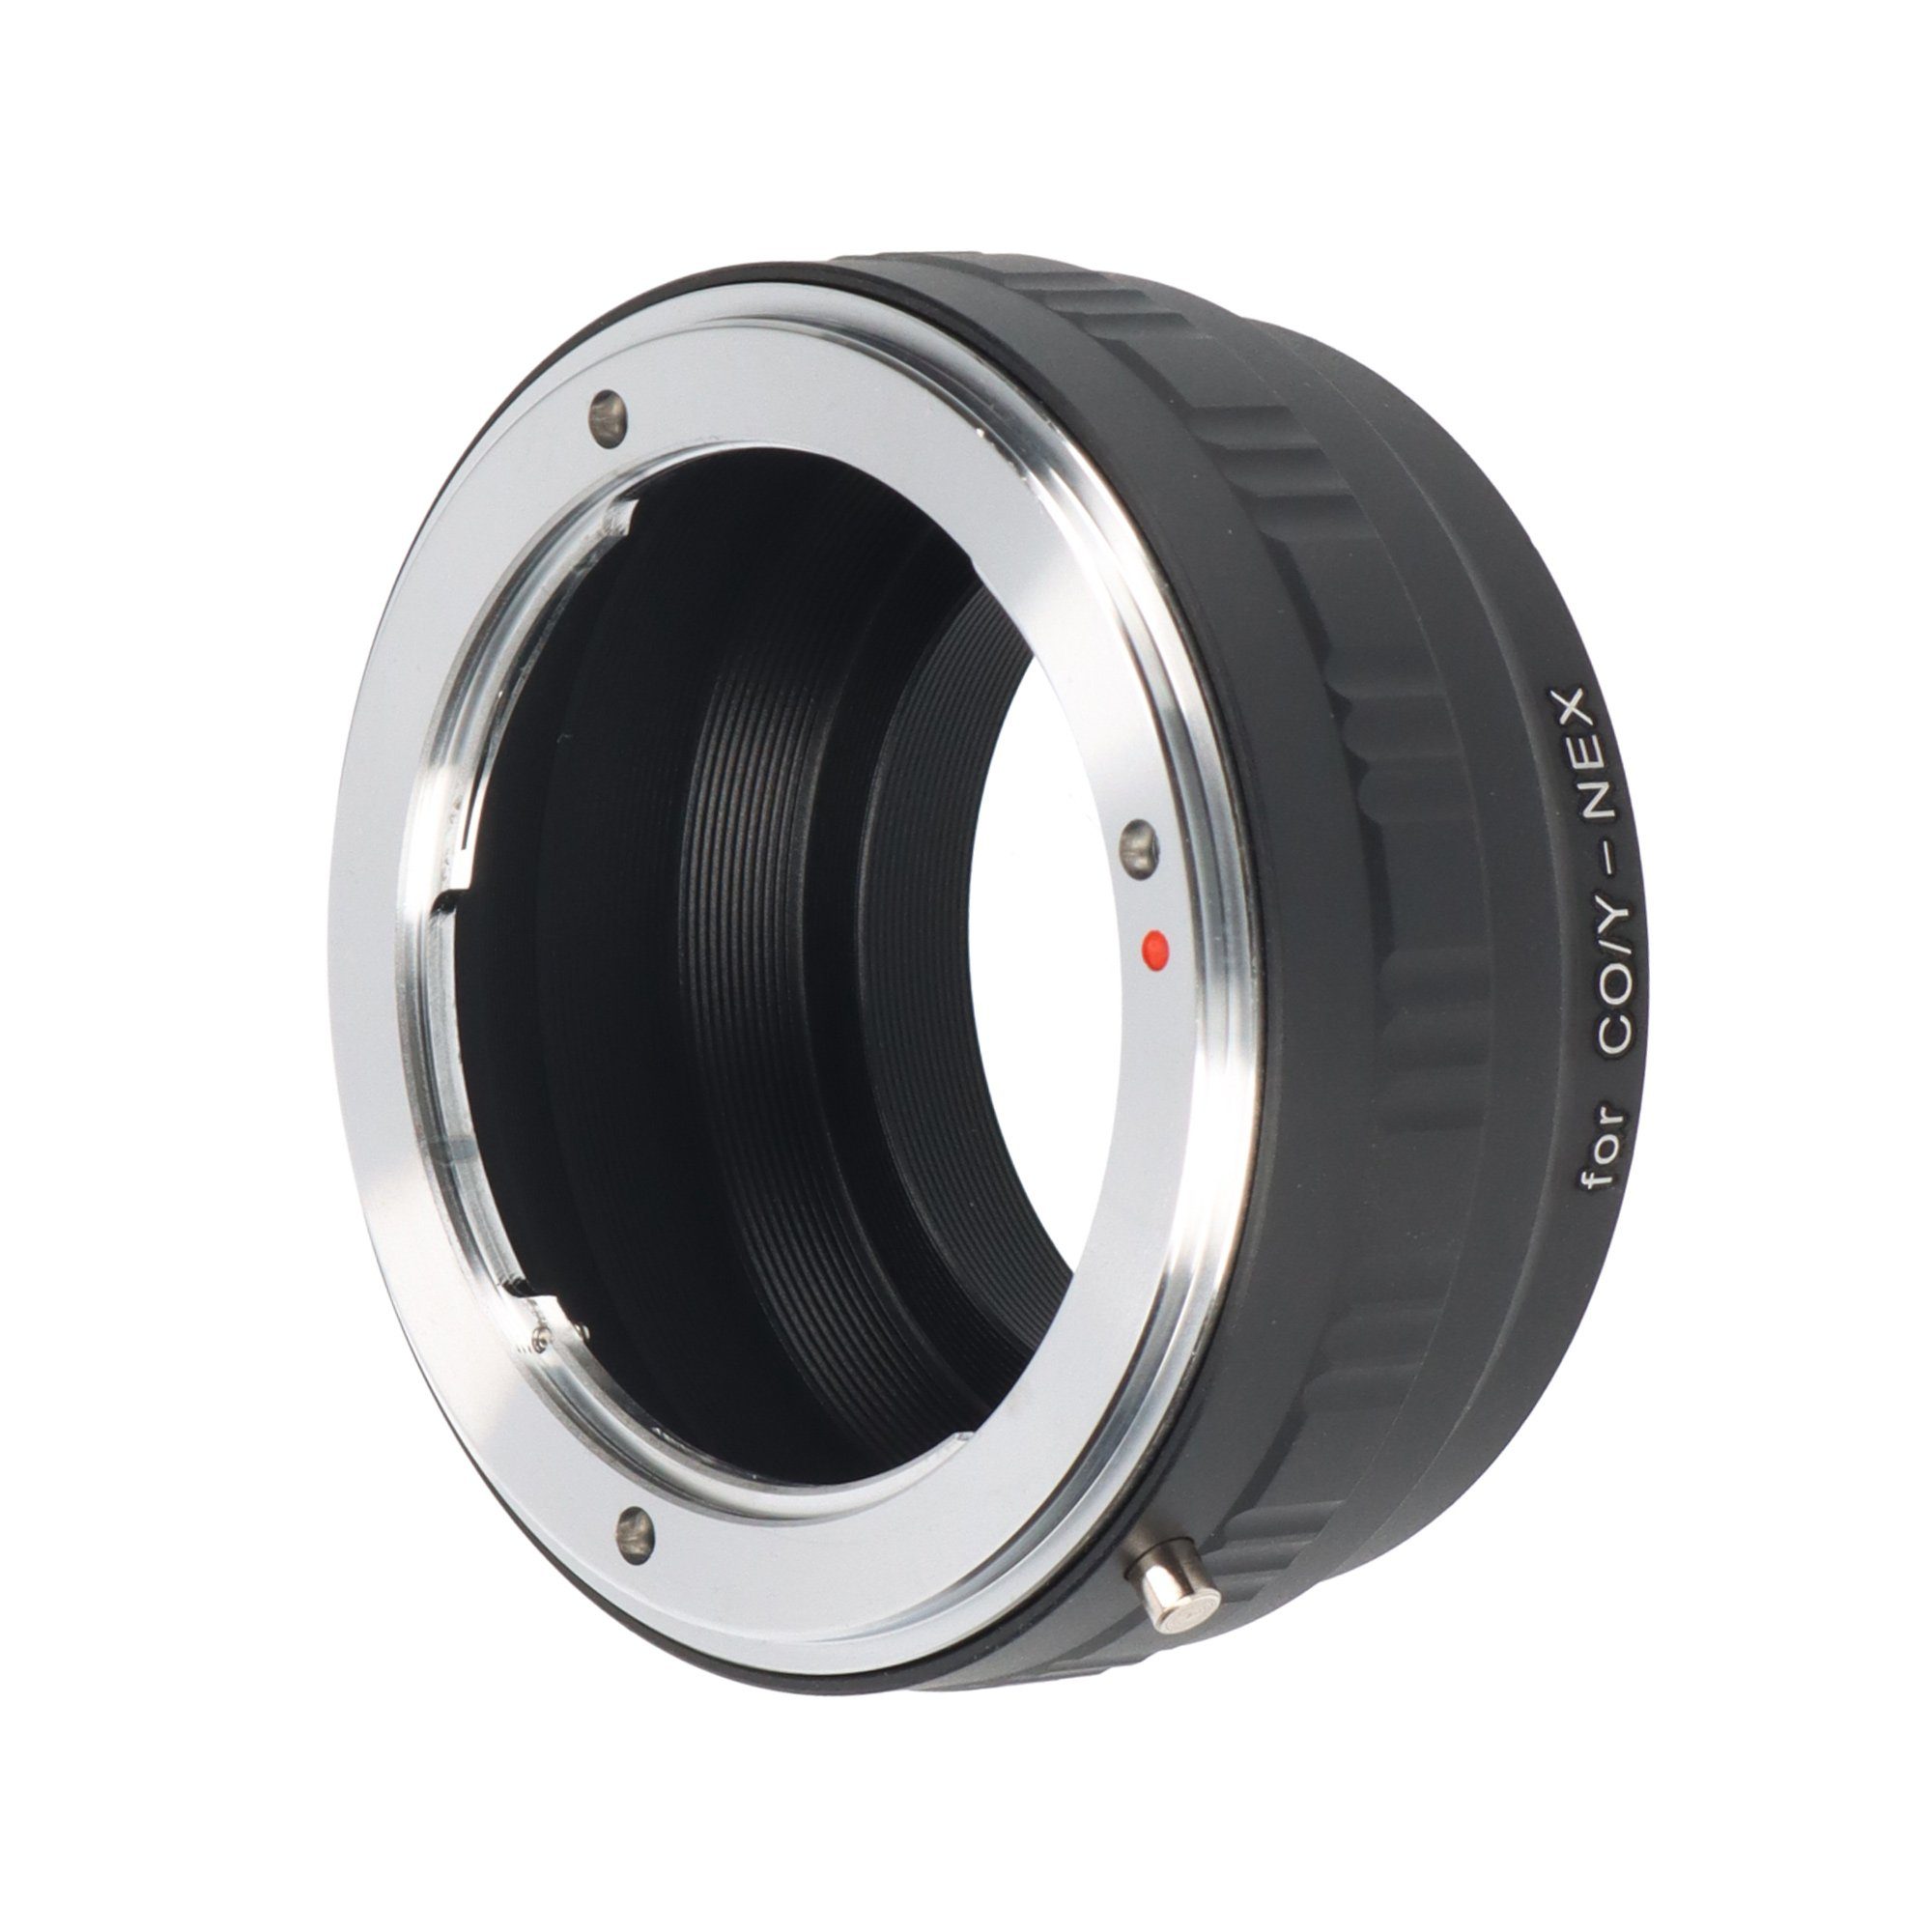 ayex Objektivadapter Contax / Yashica Objektiveadapter an E-Mount Sony Objektive Kameras